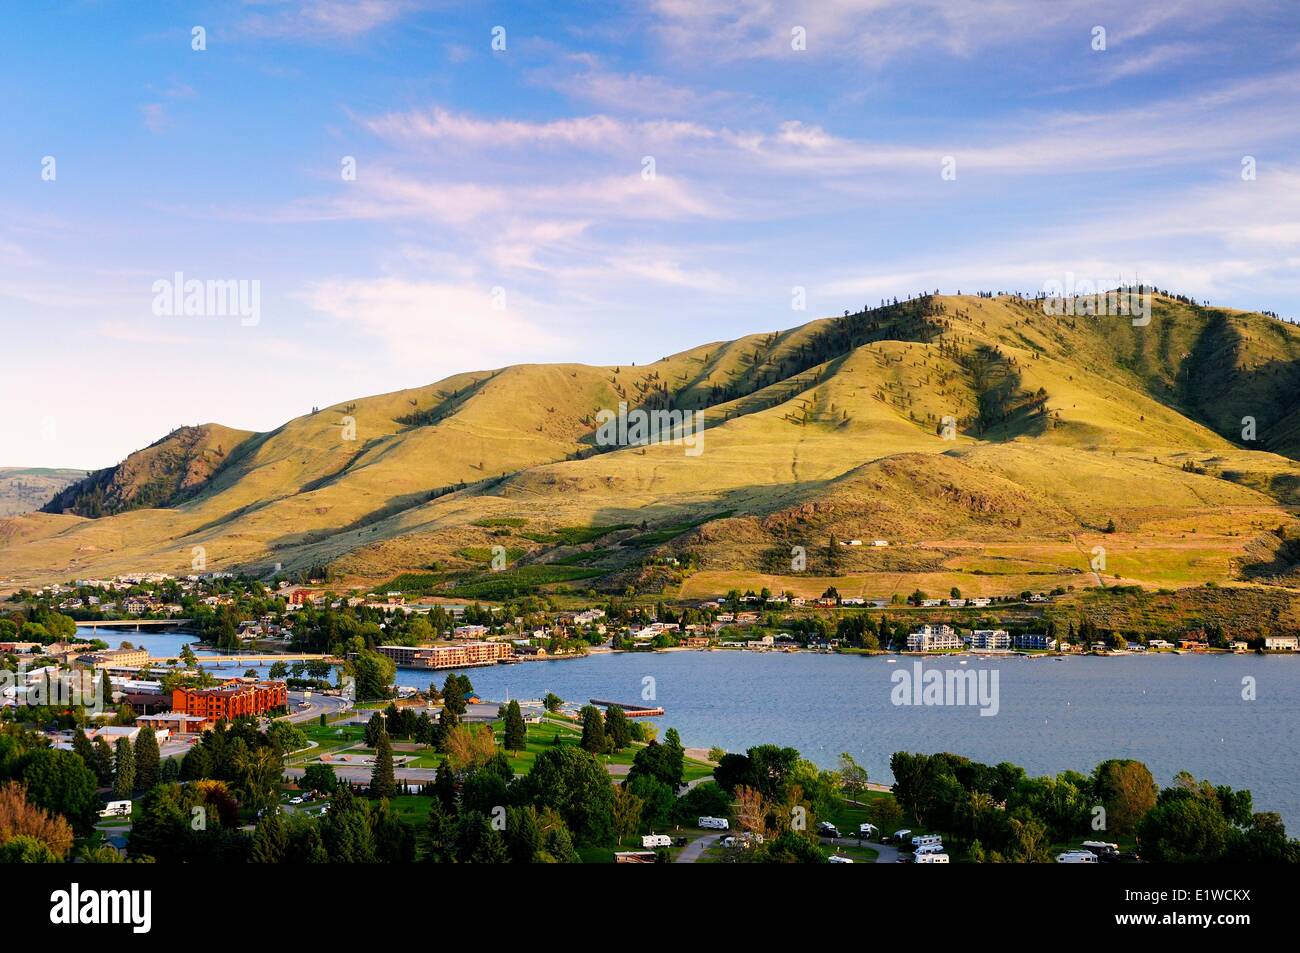 The town of Chelan on Lake Chelan in Washington State, USA. Stock Photo